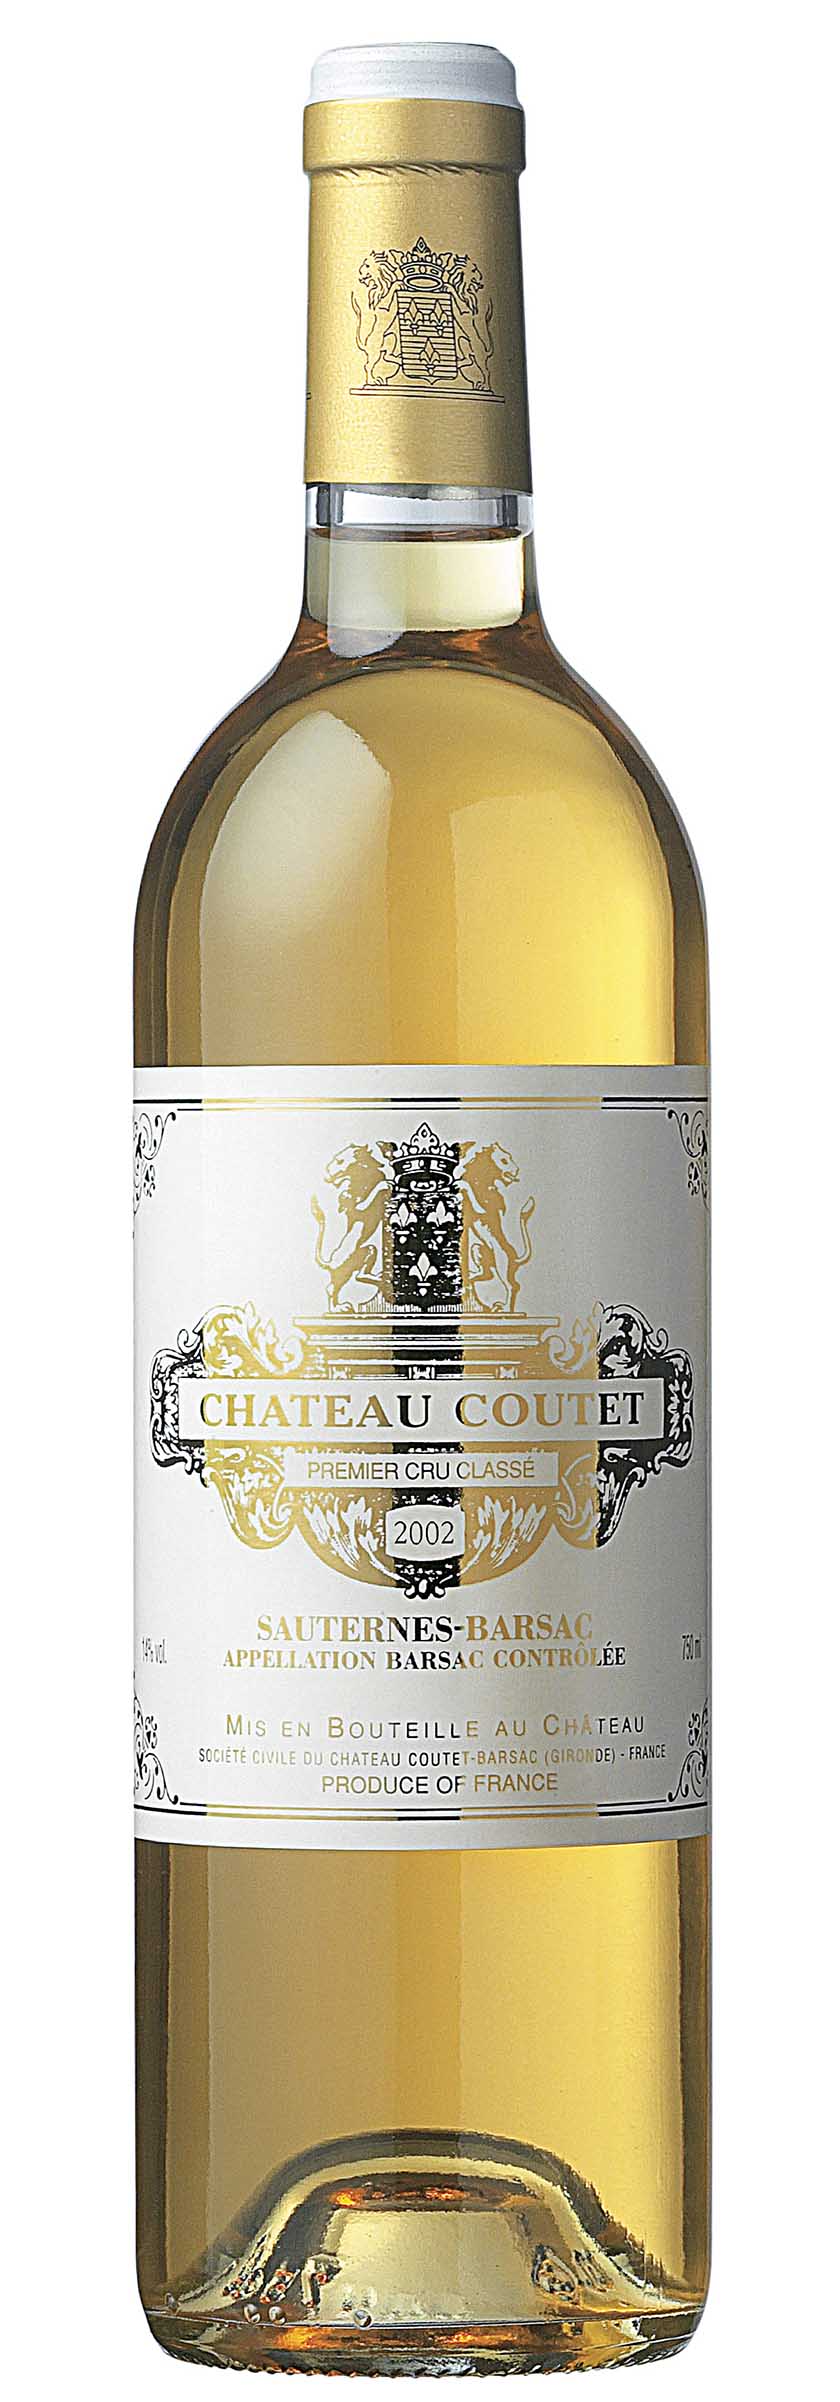 Château Coutet, Sauternes 2002, £26.50